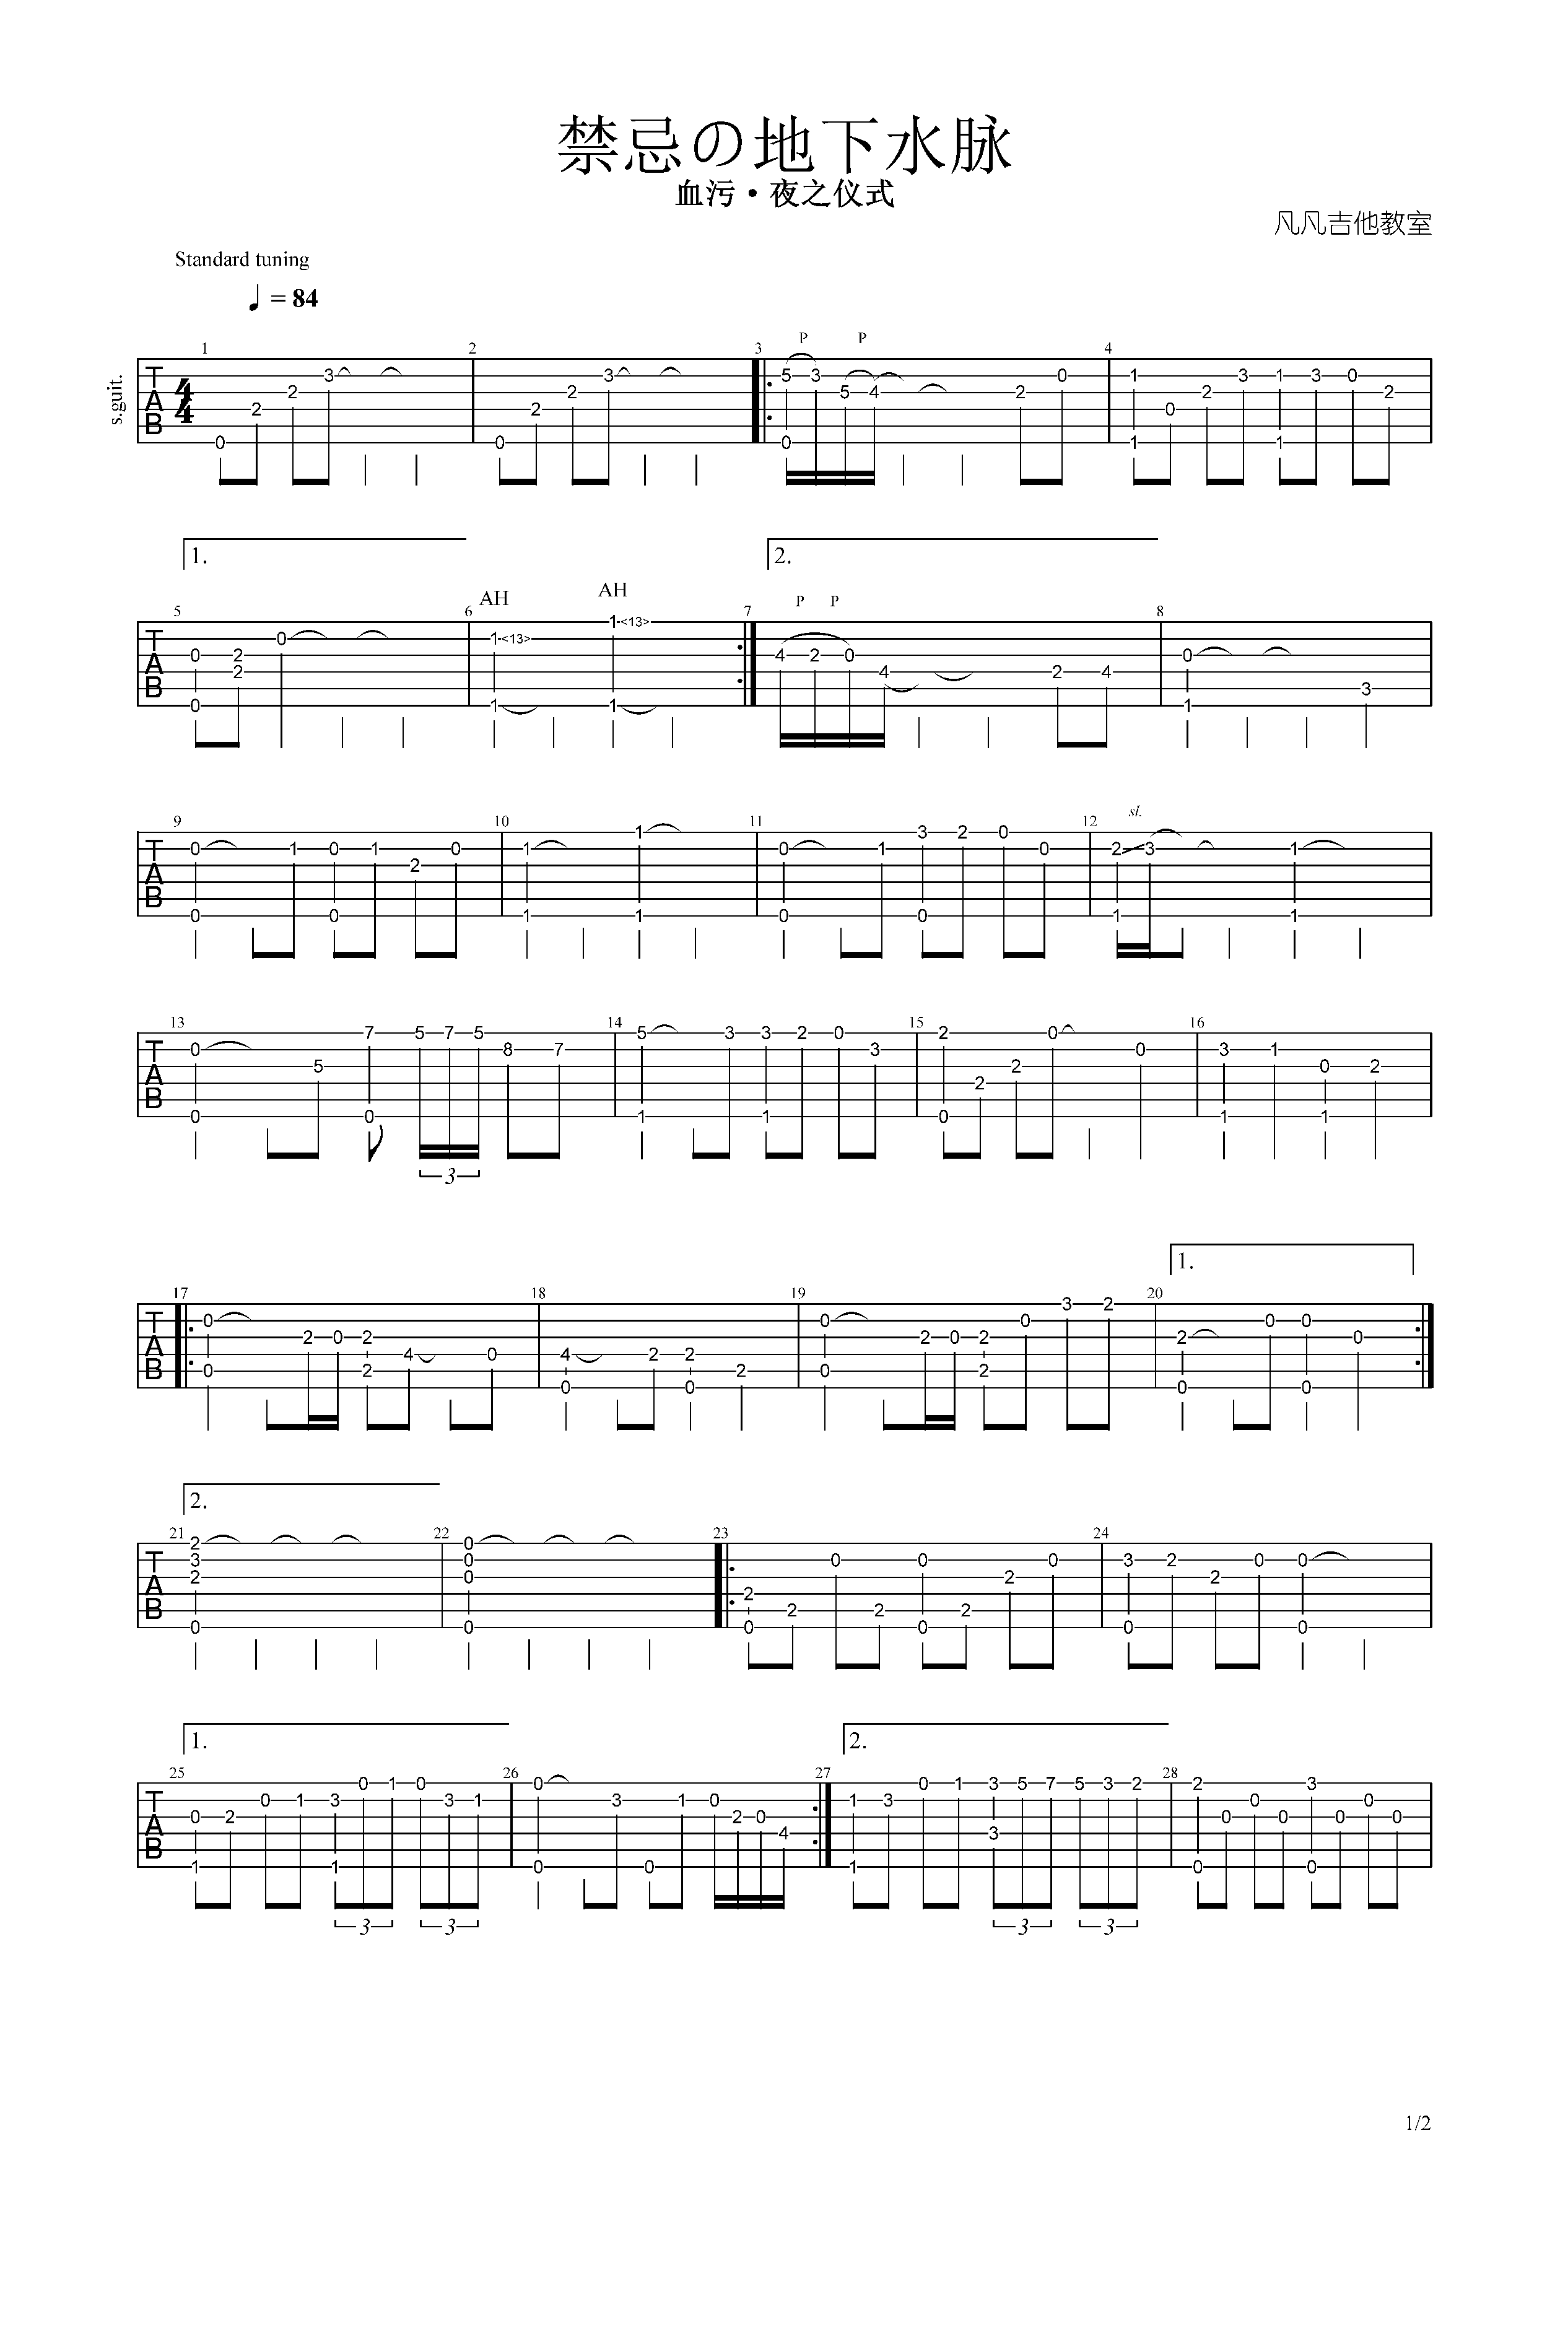 【乐队总谱】Metallica《Enter Sandman》GTP总谱 6音轨完美还原版 可以用于演出和排练 - GTP吉他谱